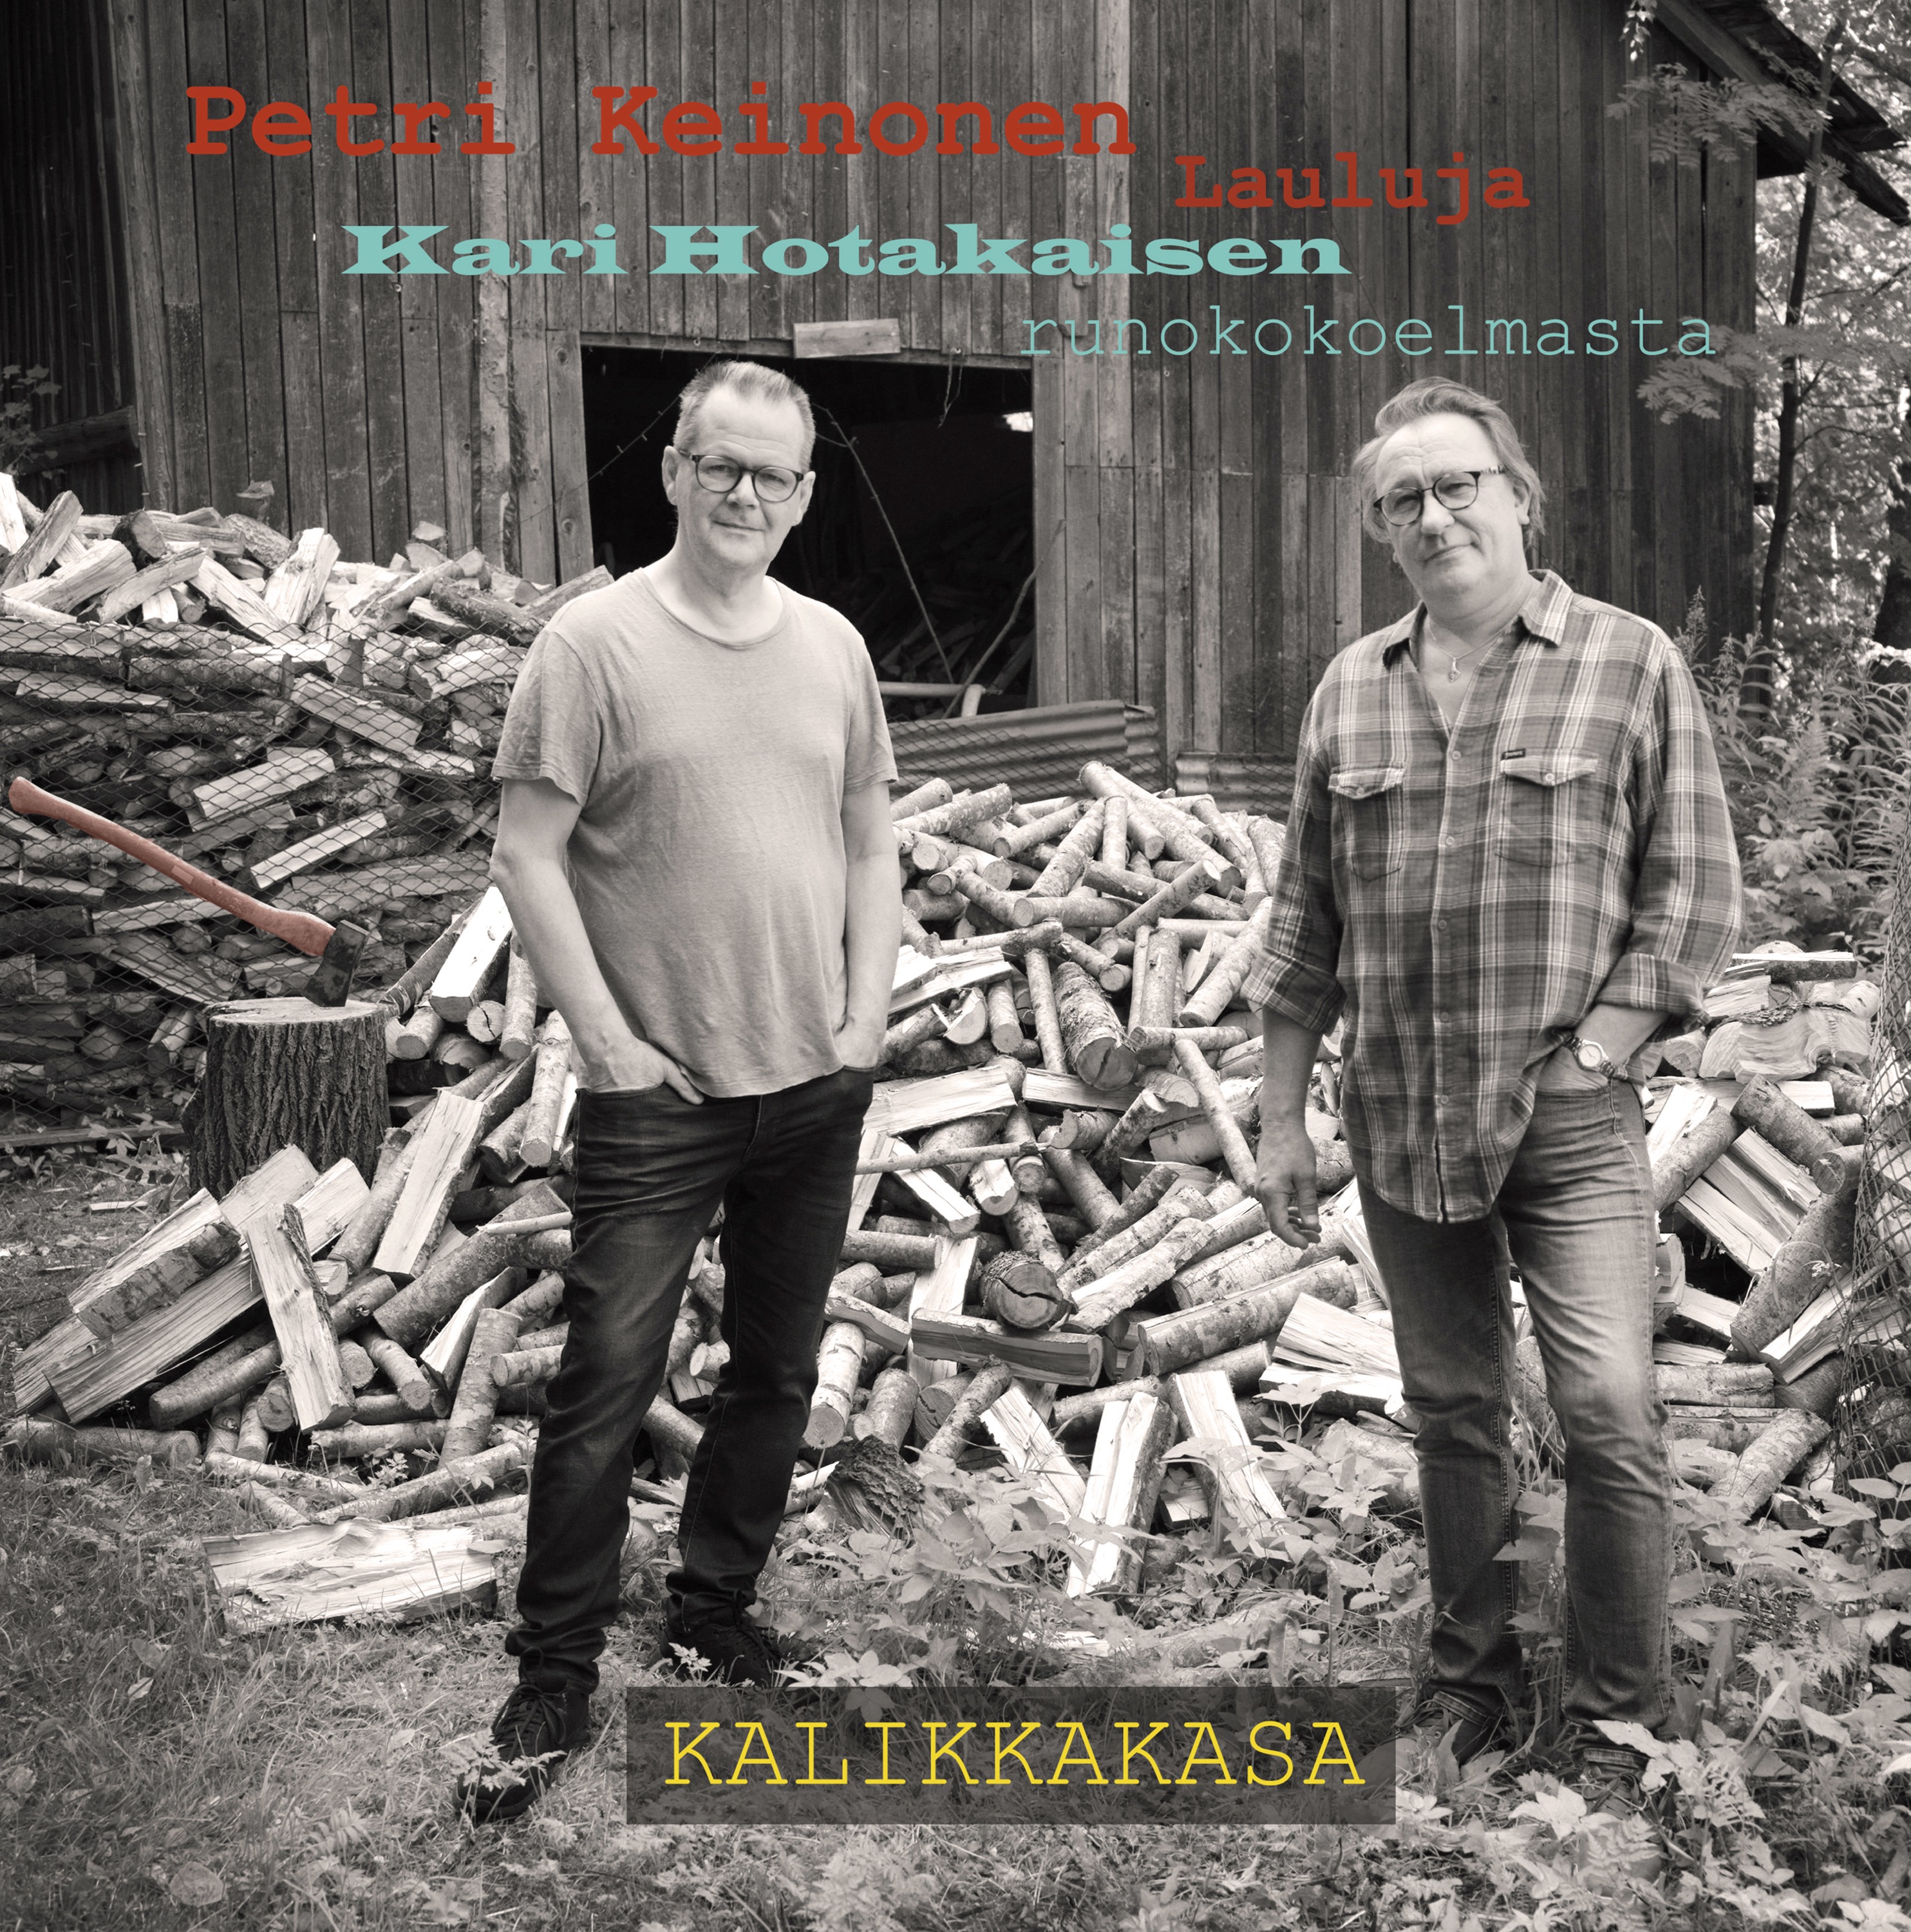 Petri Keinonen - Lauluja Kari Hotakaisen runokokoelm - CD